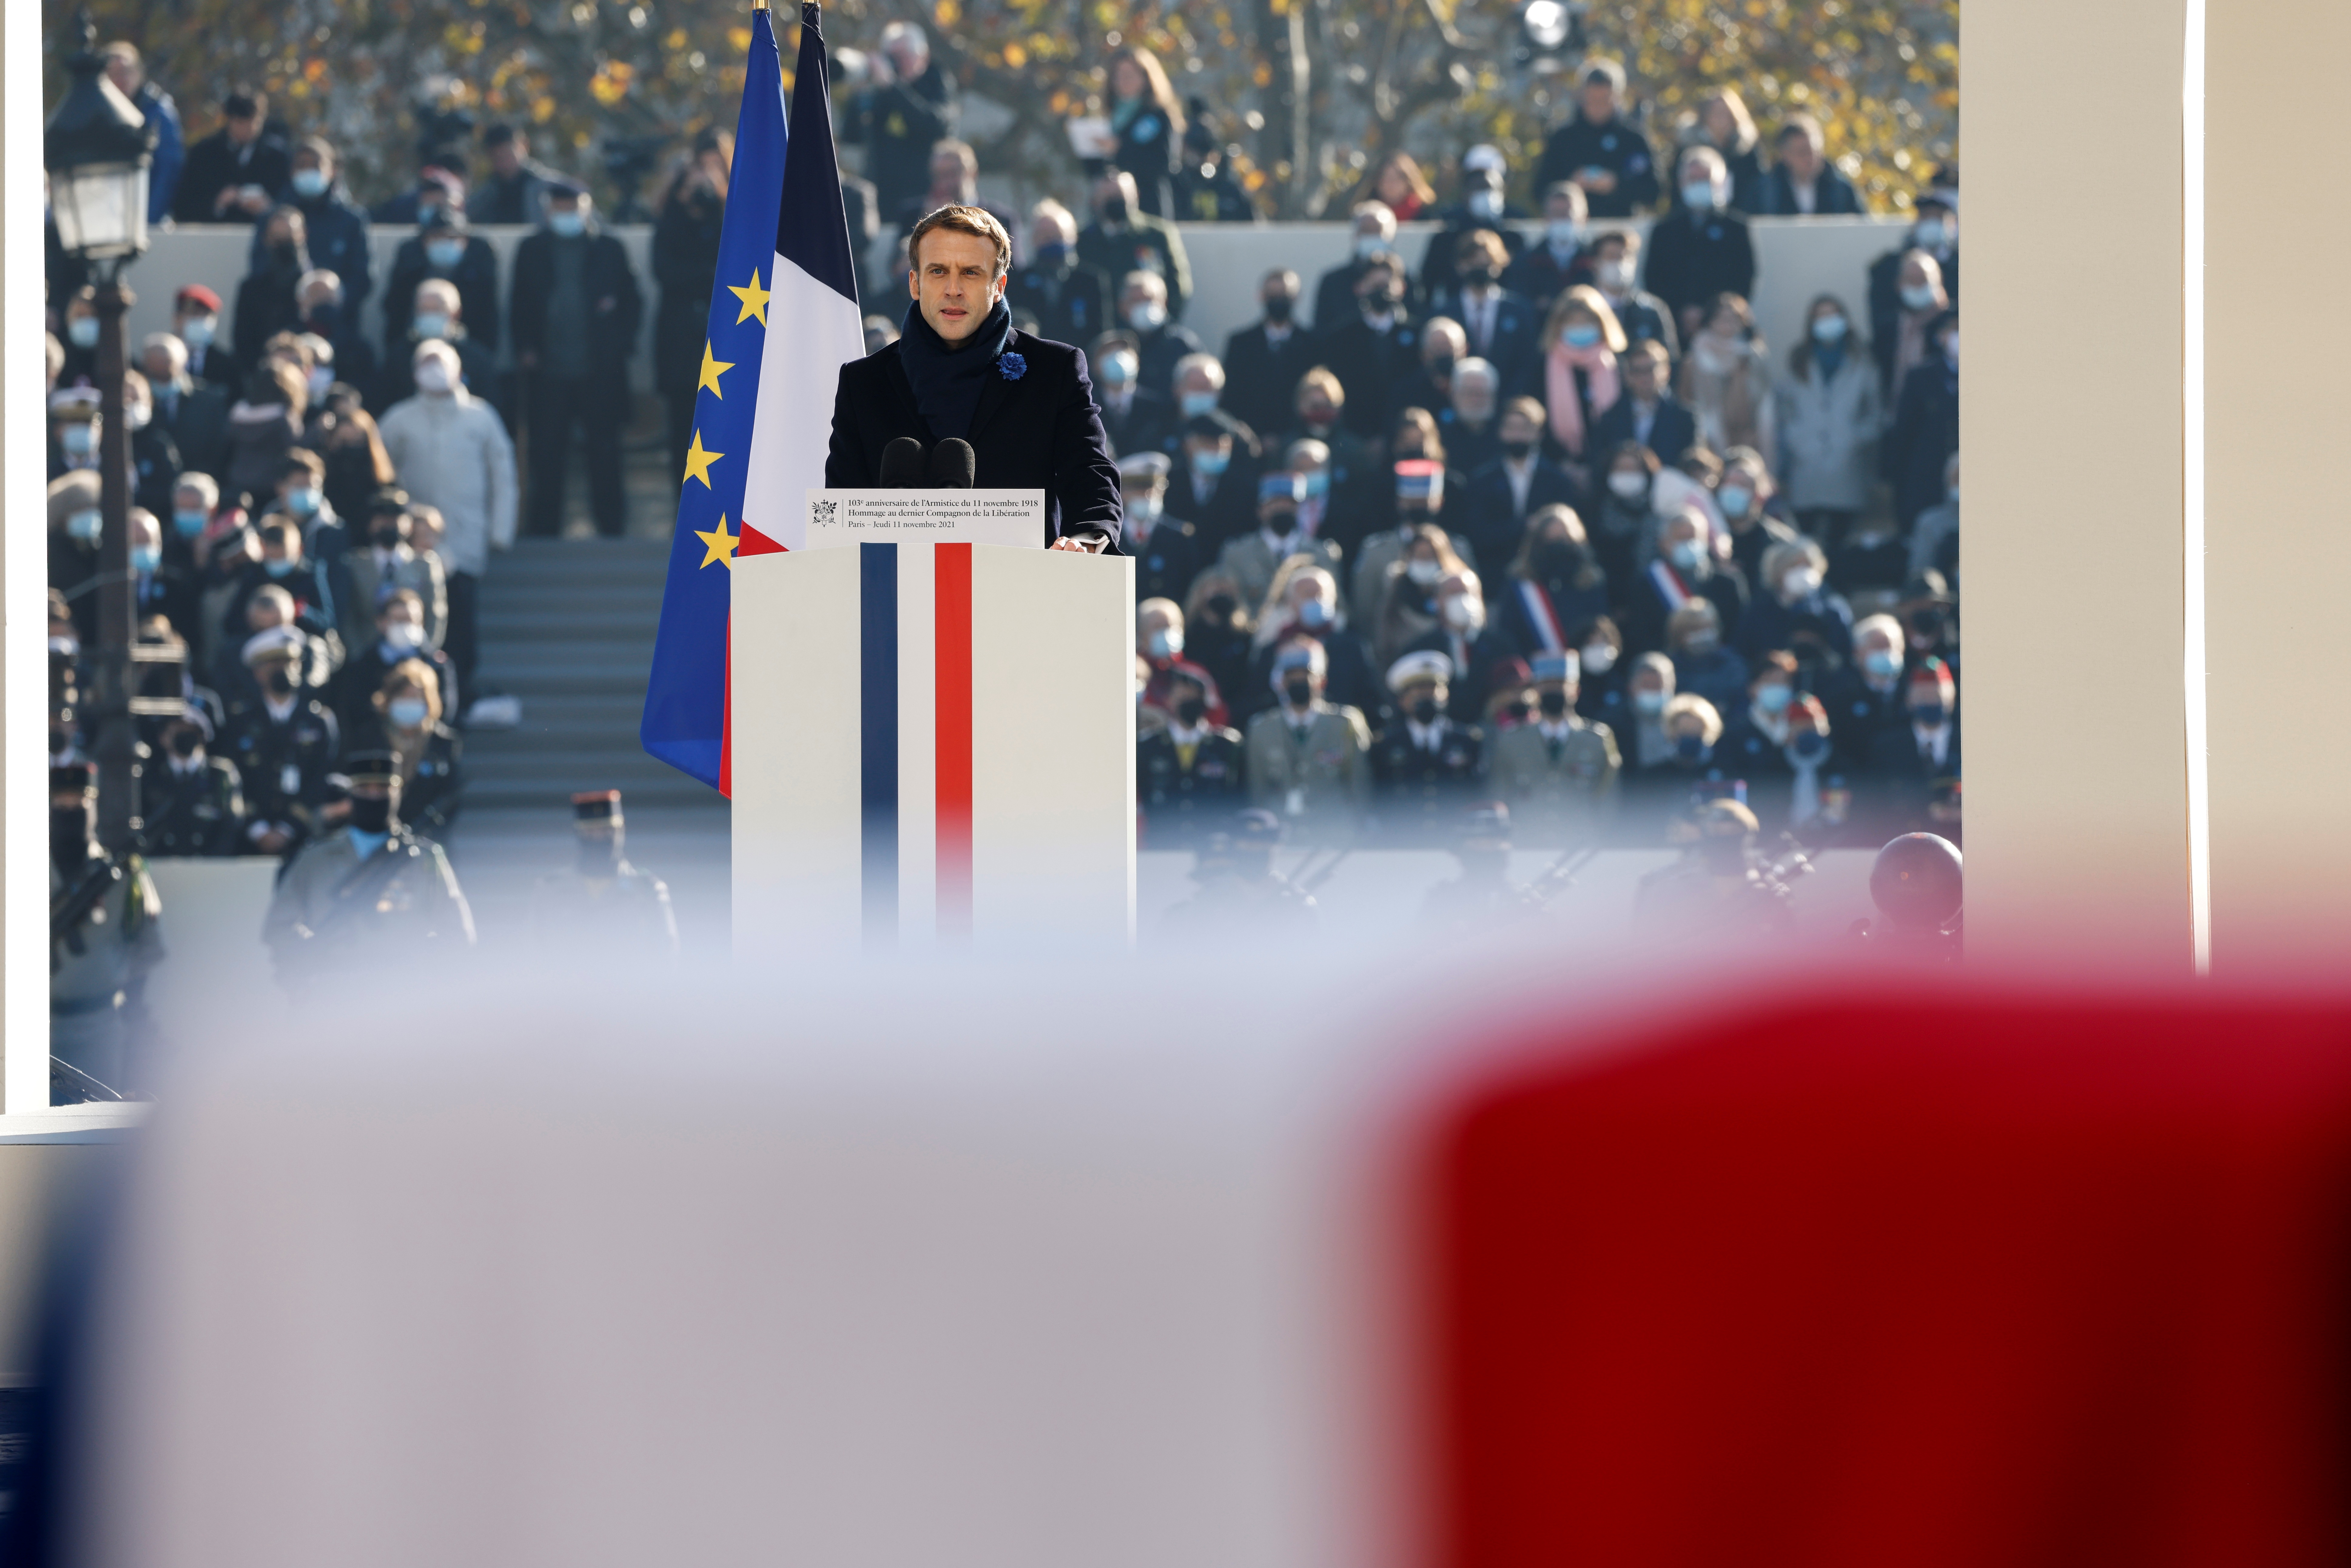 Le bleu entre les drapeaux de l'UE et de la France est désormais différent (Photo: Reuters)